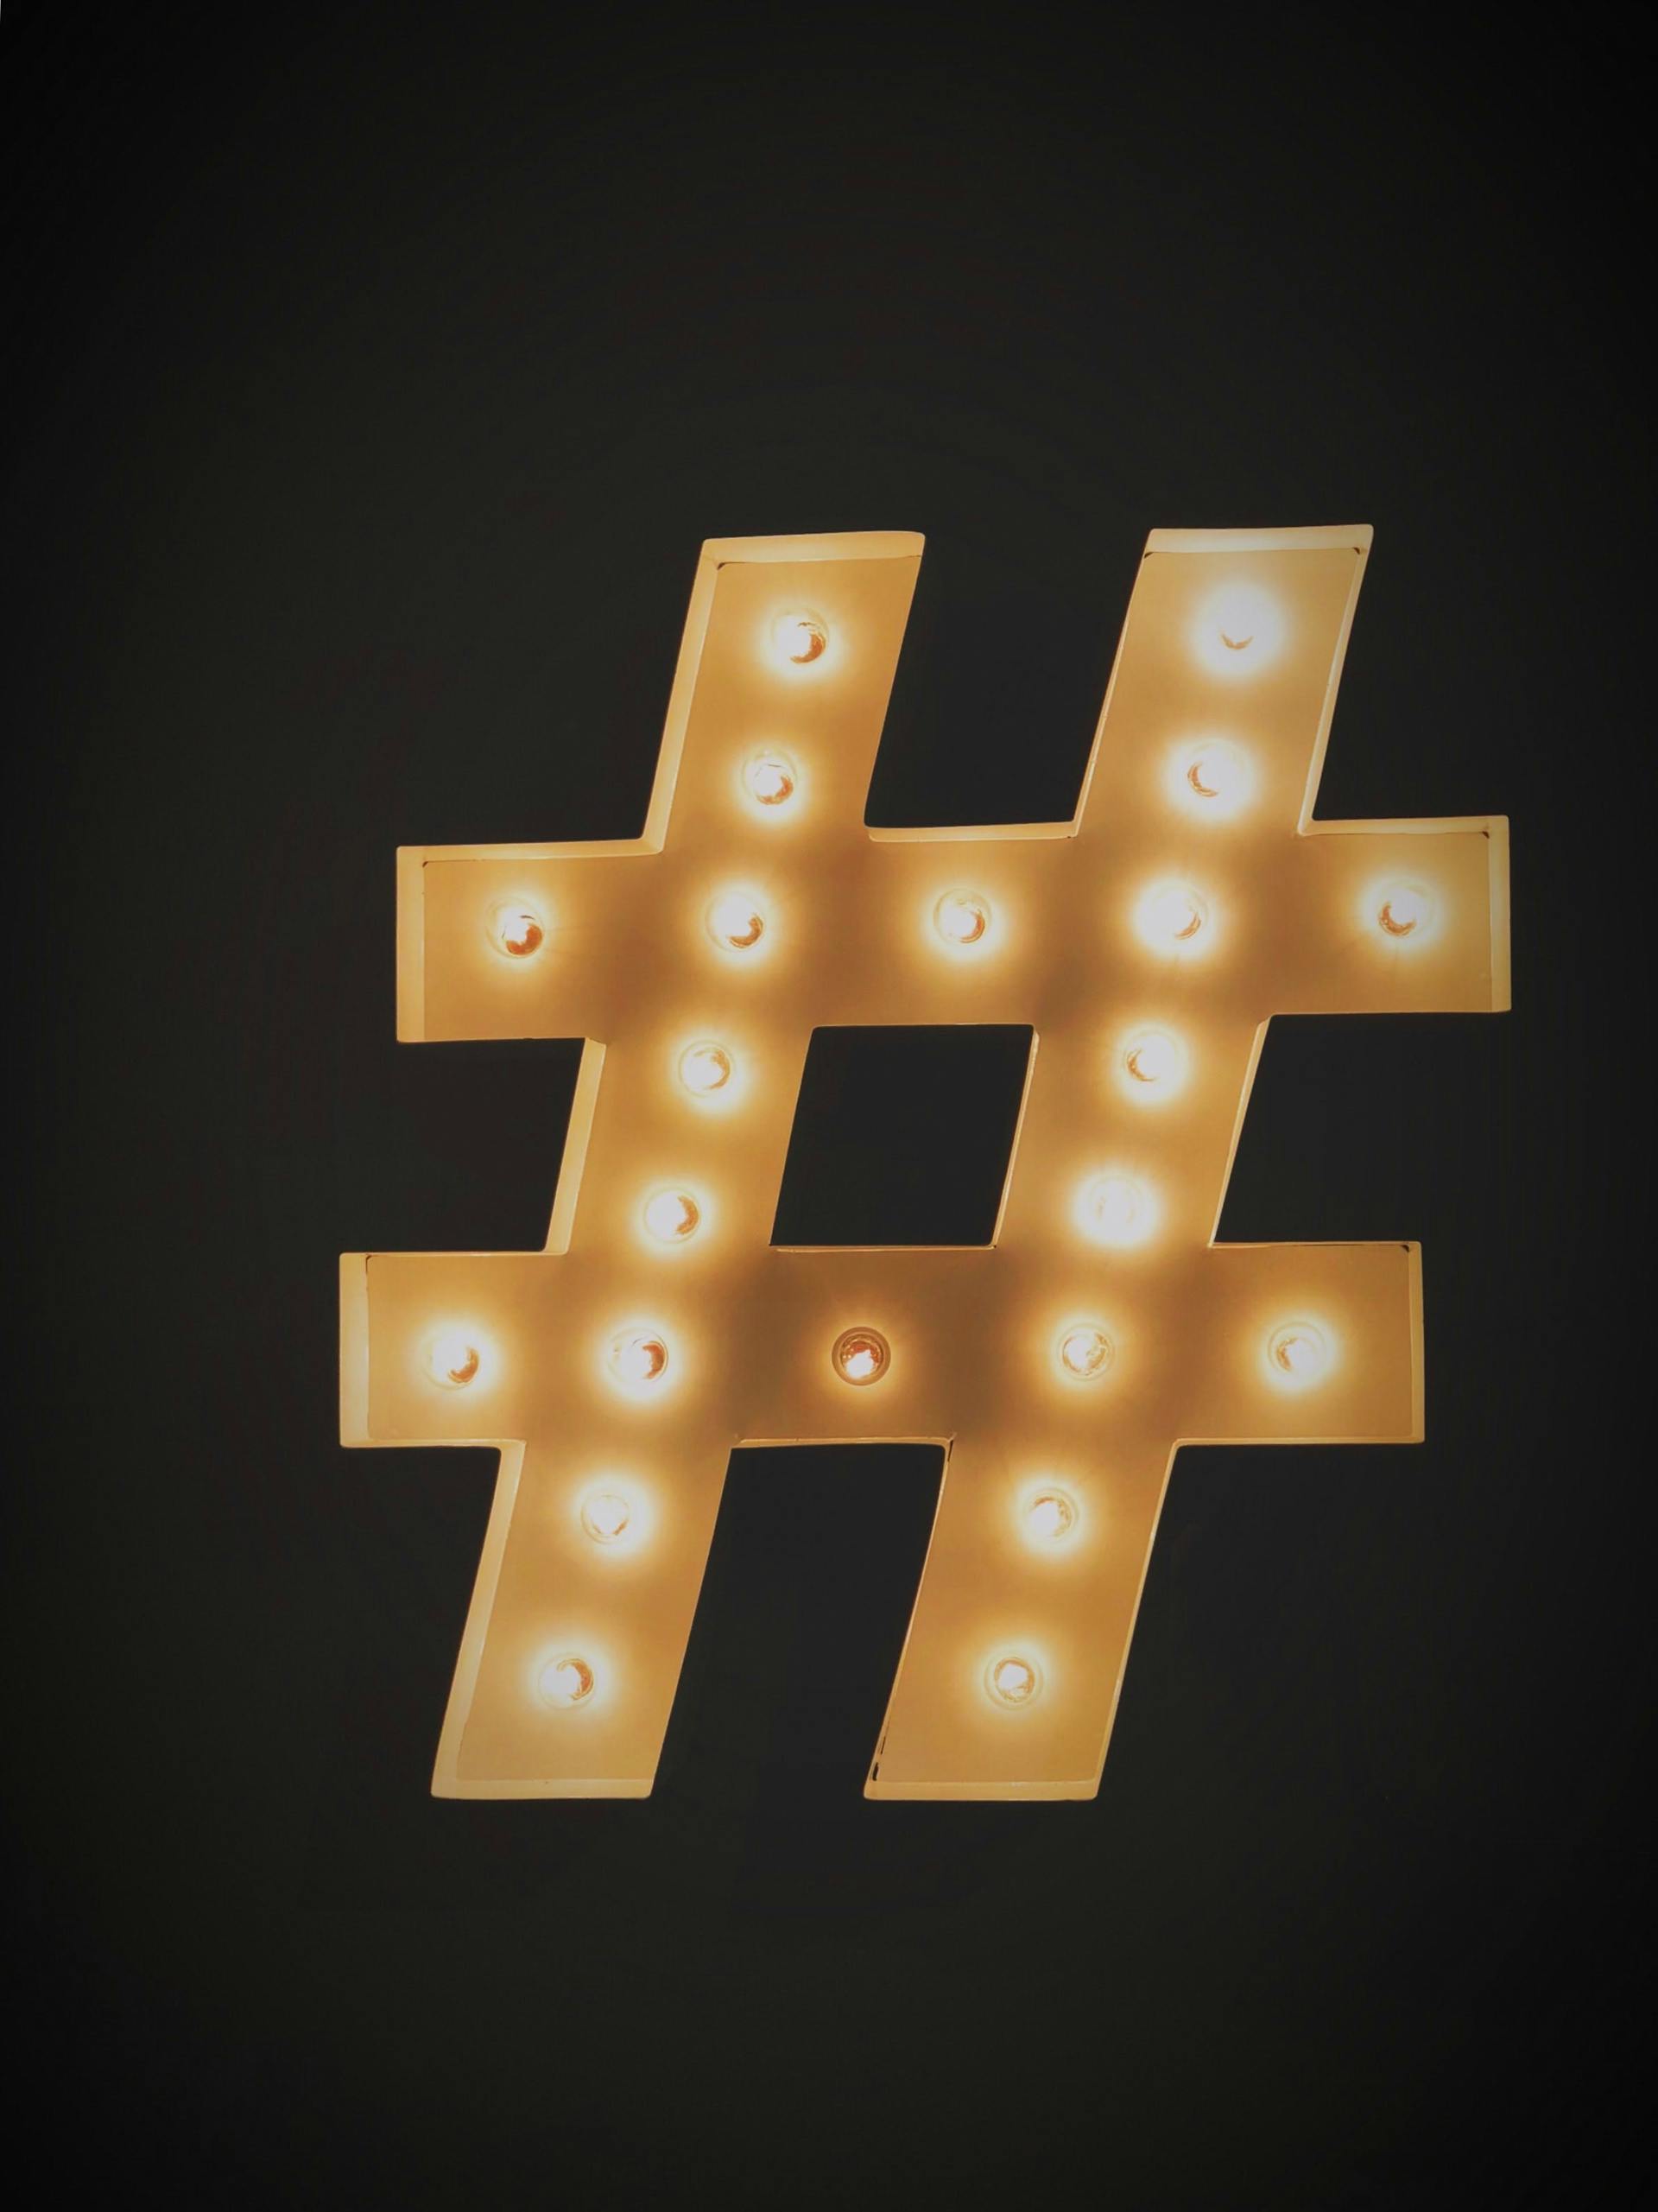 Le symbole du hashtag s'éclaire sur un fond noir. Couramment utilisé dans le marketing stratégique des réseaux sociaux.